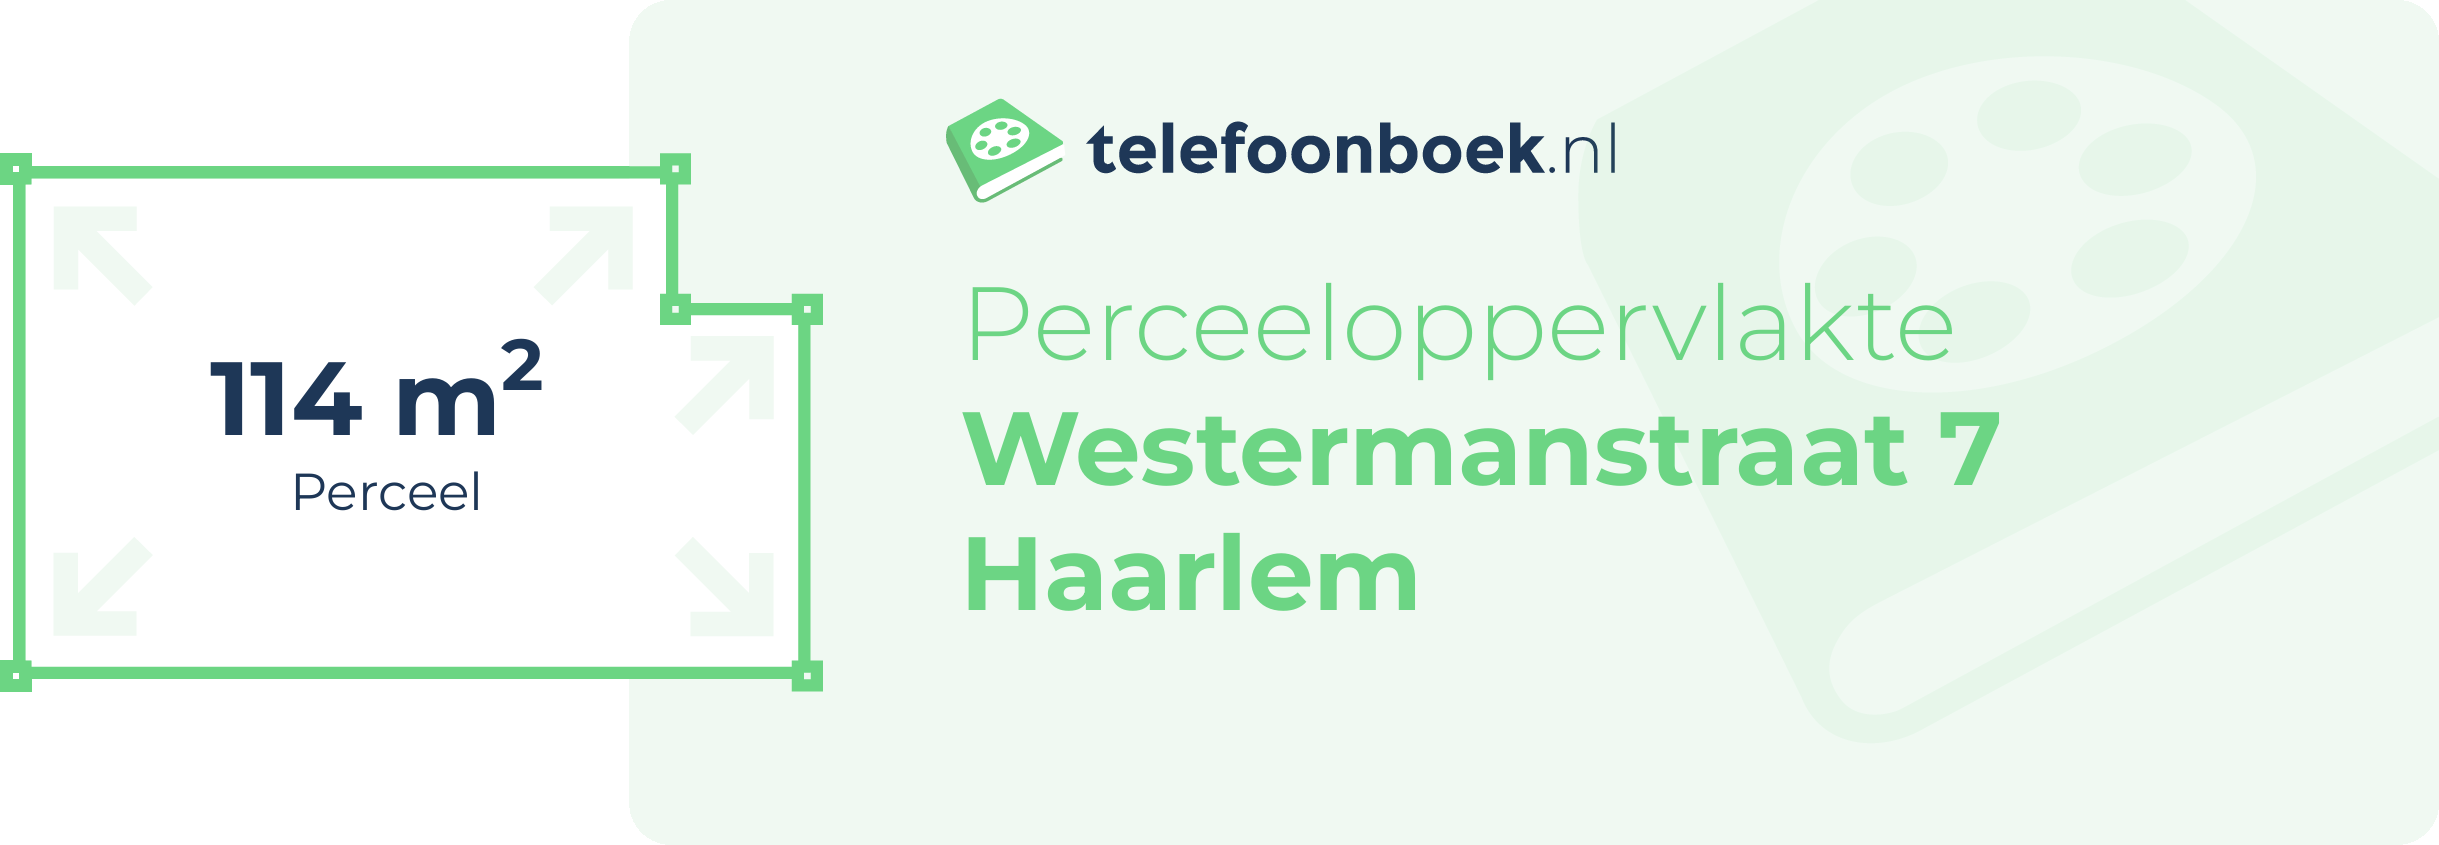 Perceeloppervlakte Westermanstraat 7 Haarlem